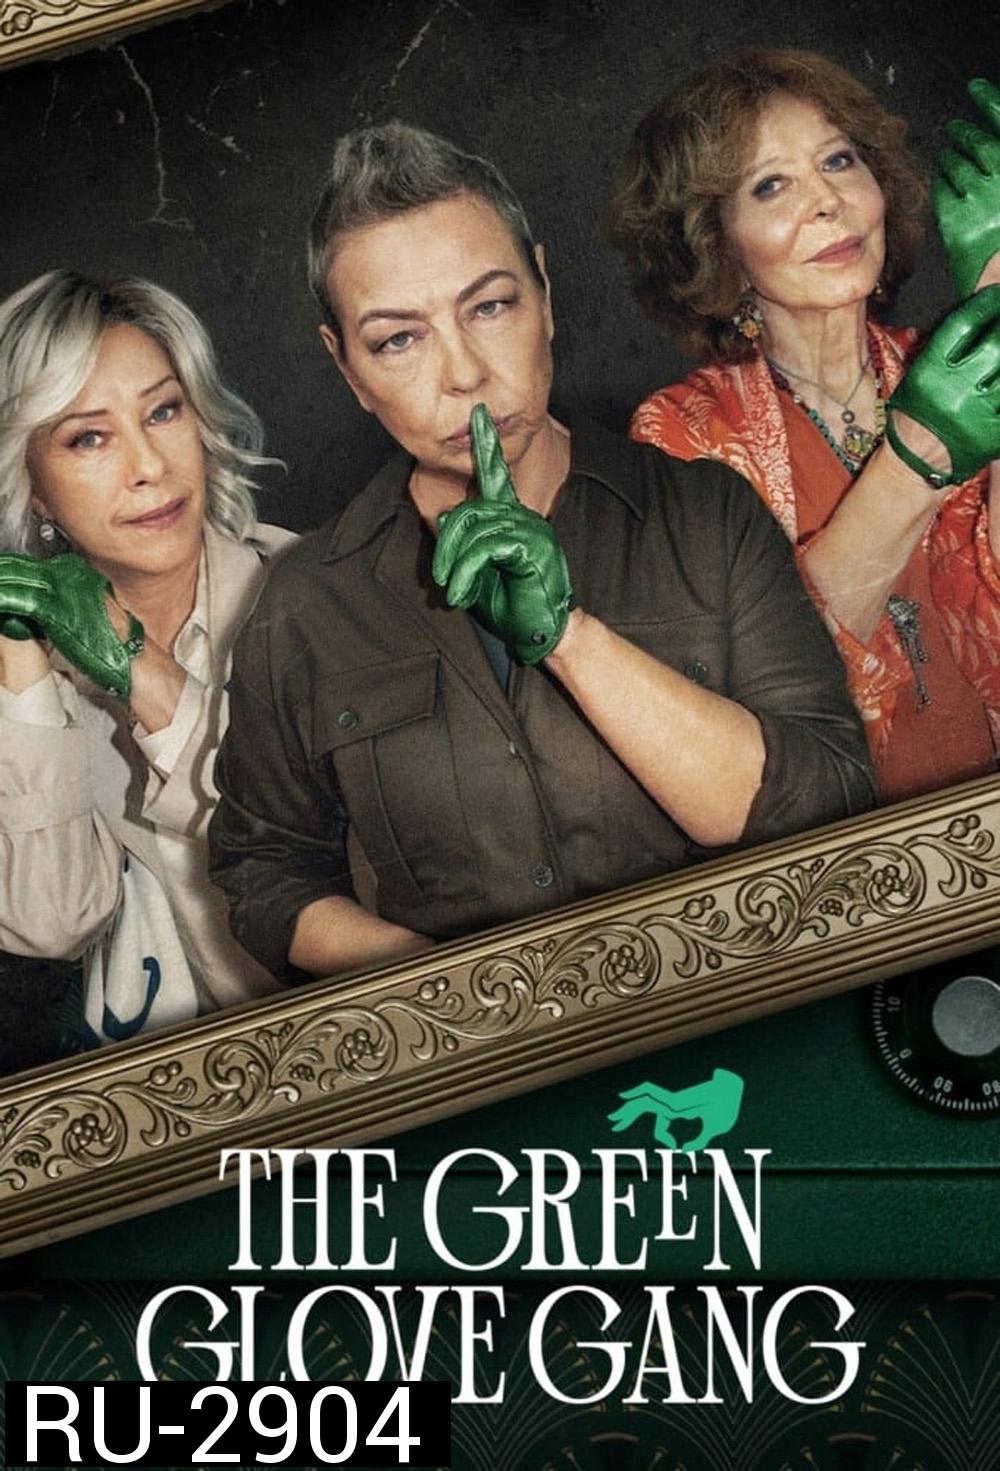 The Green Glove Gang แก๊งถุงมือเขียว (2022) 8 ตอน